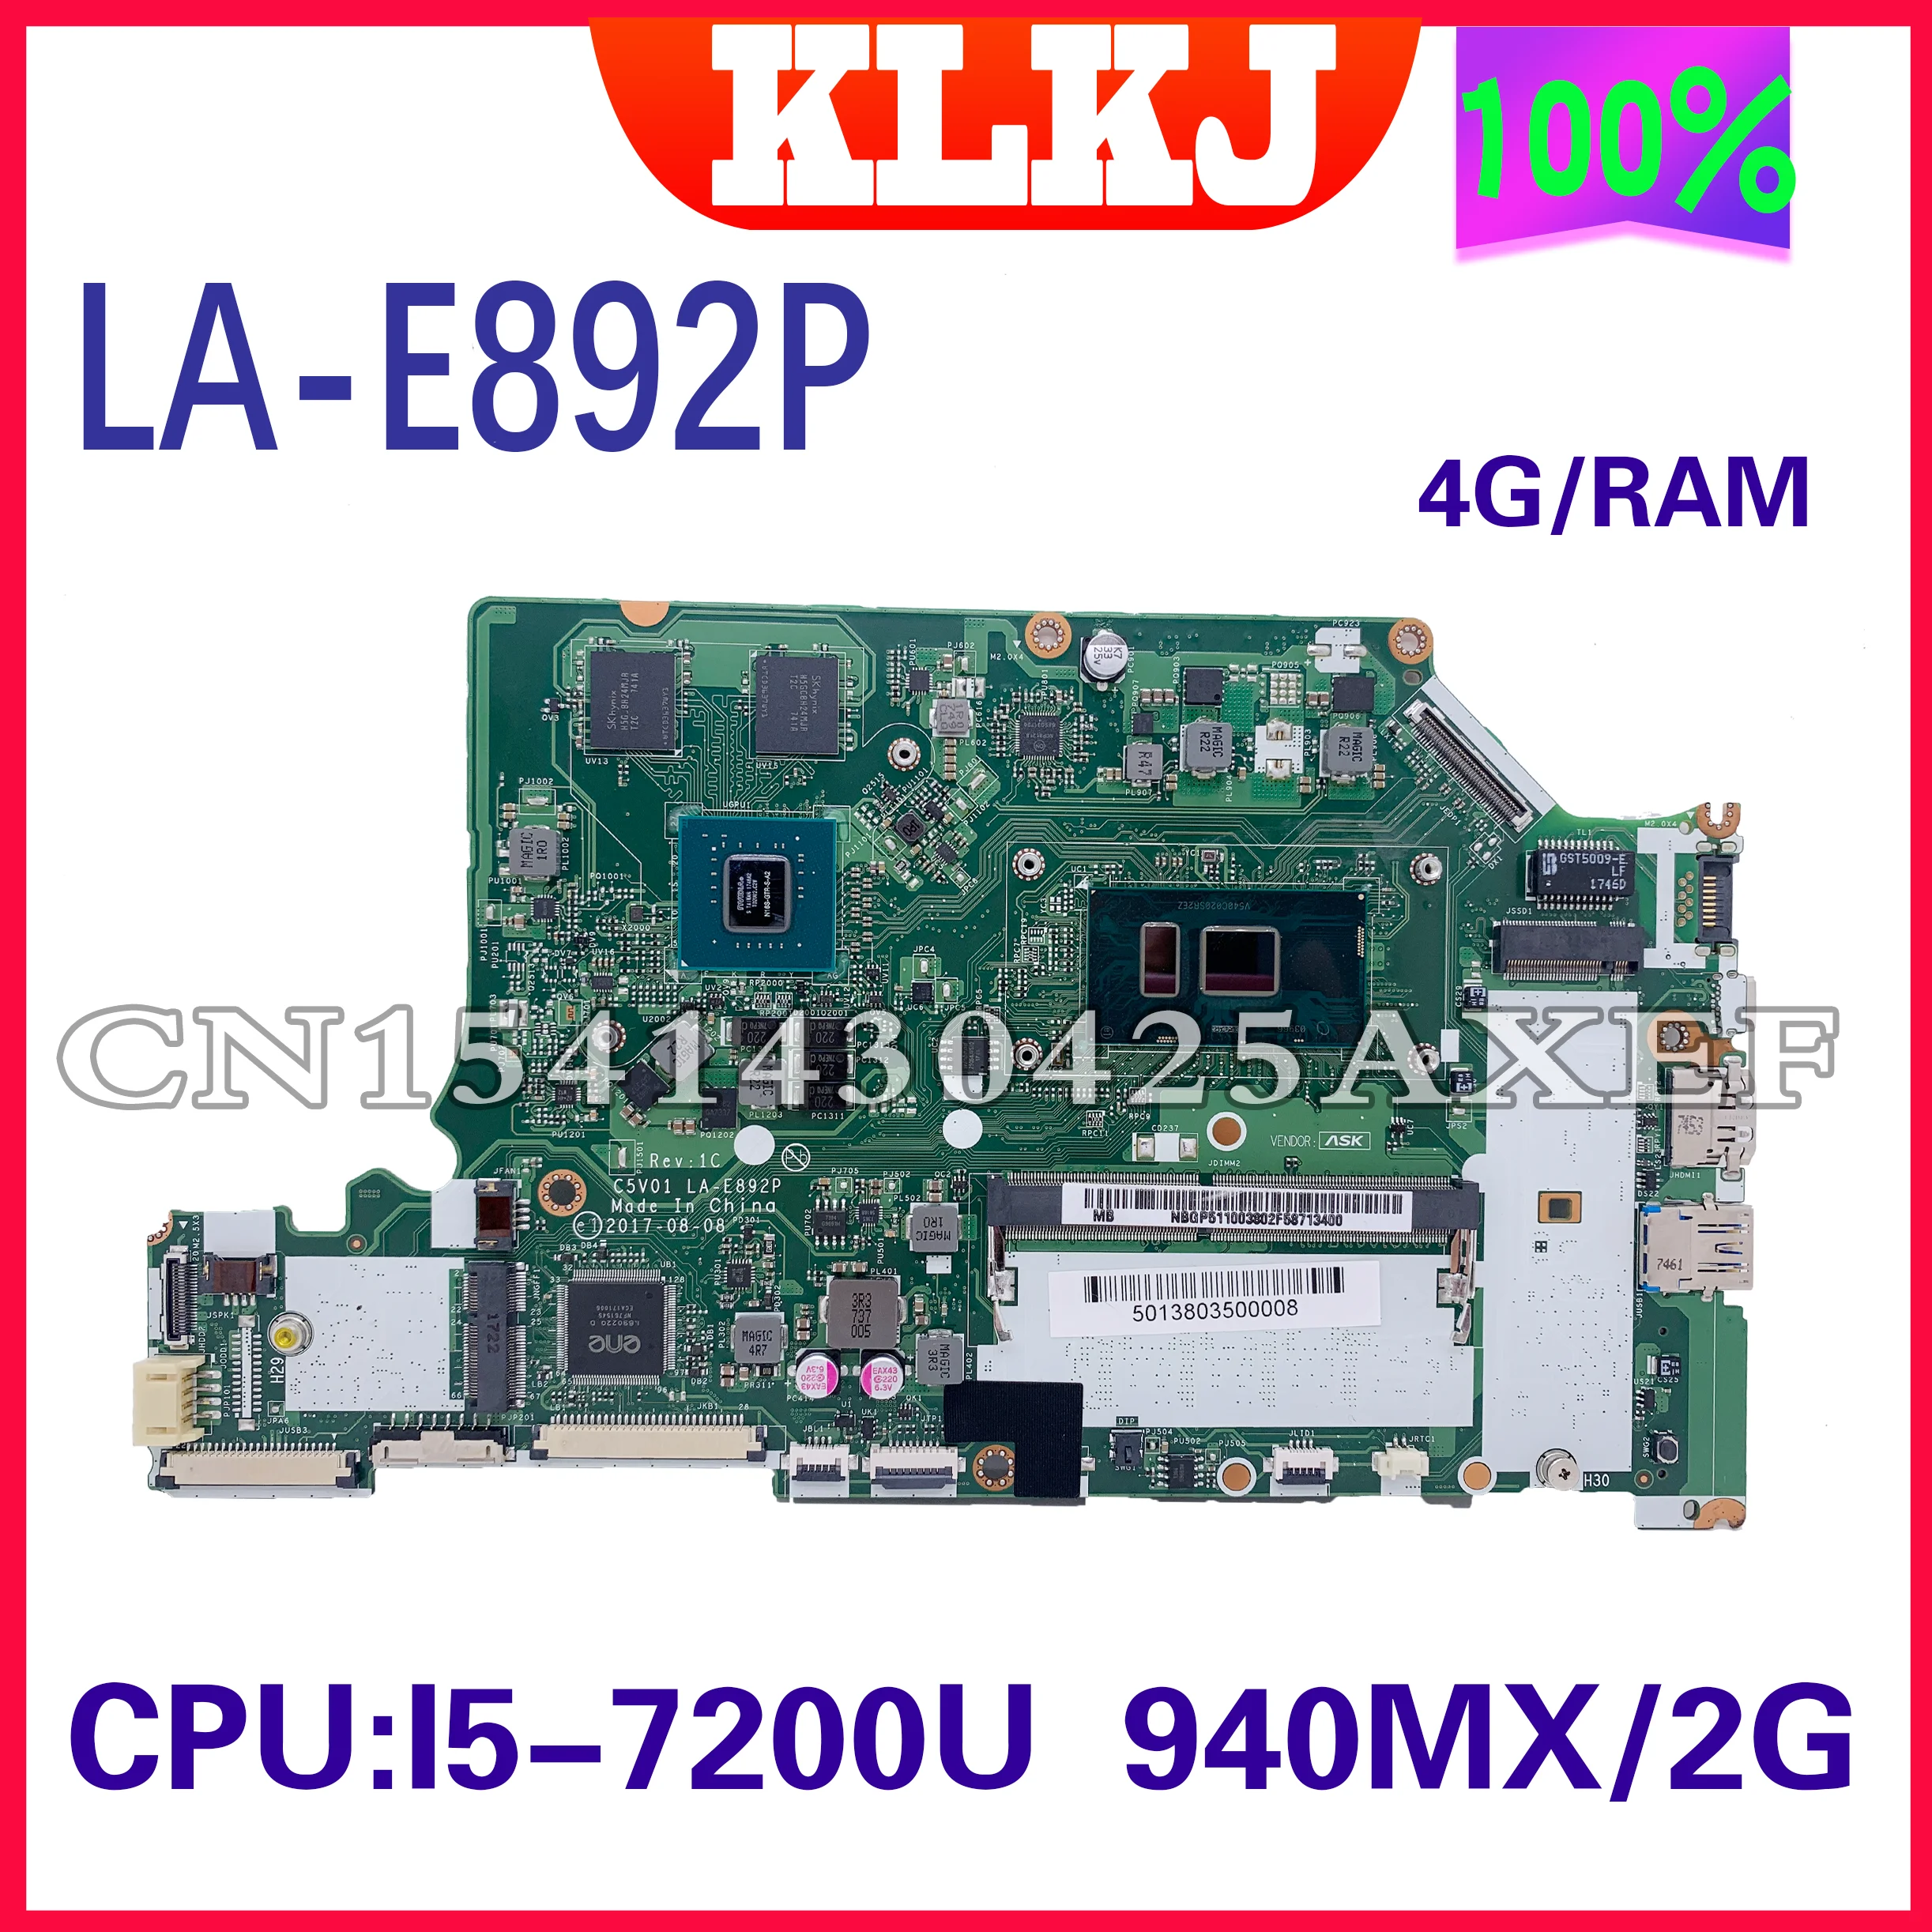 

C5V01 LA-E892P for ACER A515-51G A315-53G A615-51G laptop motherboard I5-7200U 940MX/2G 4GB/RAM100% test working well REV:1C